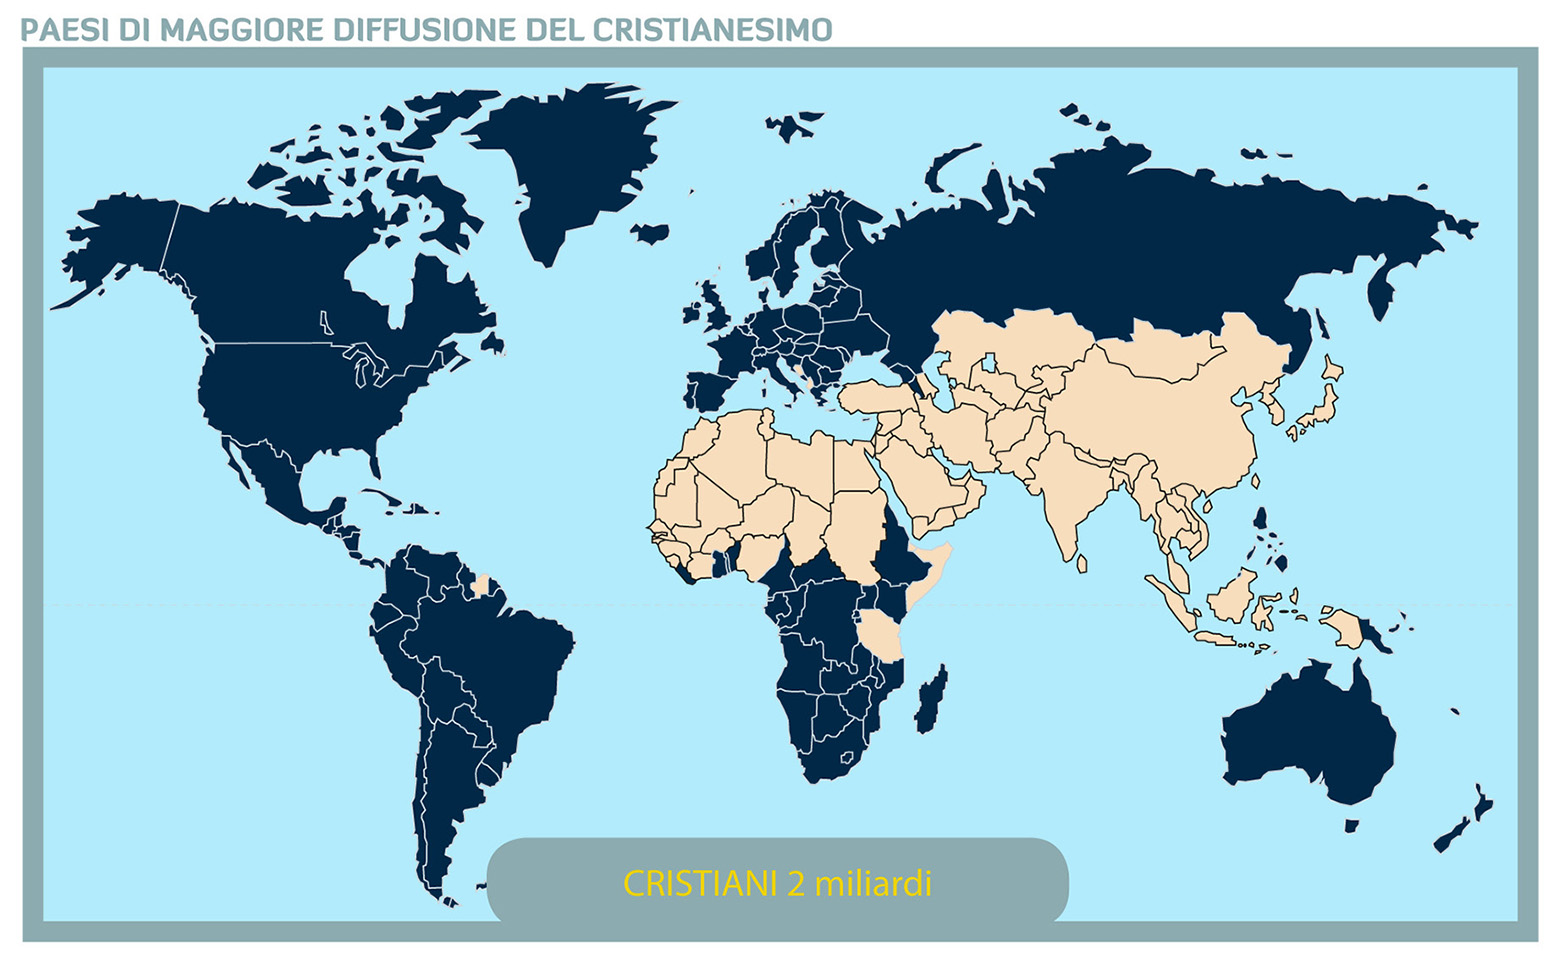 Paesi in cui il cristianesimo è maggiormente diffuso